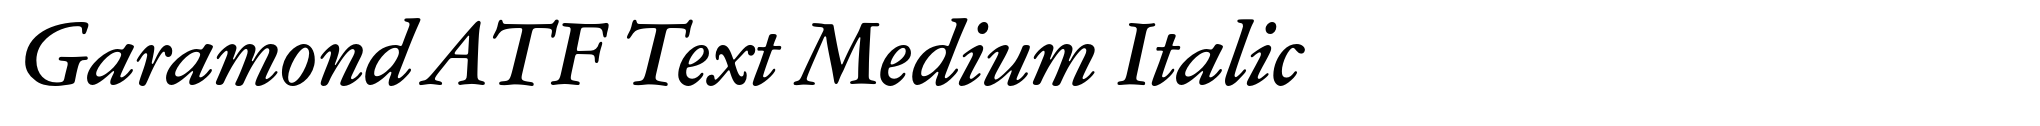 Garamond ATF Text Medium Italic image